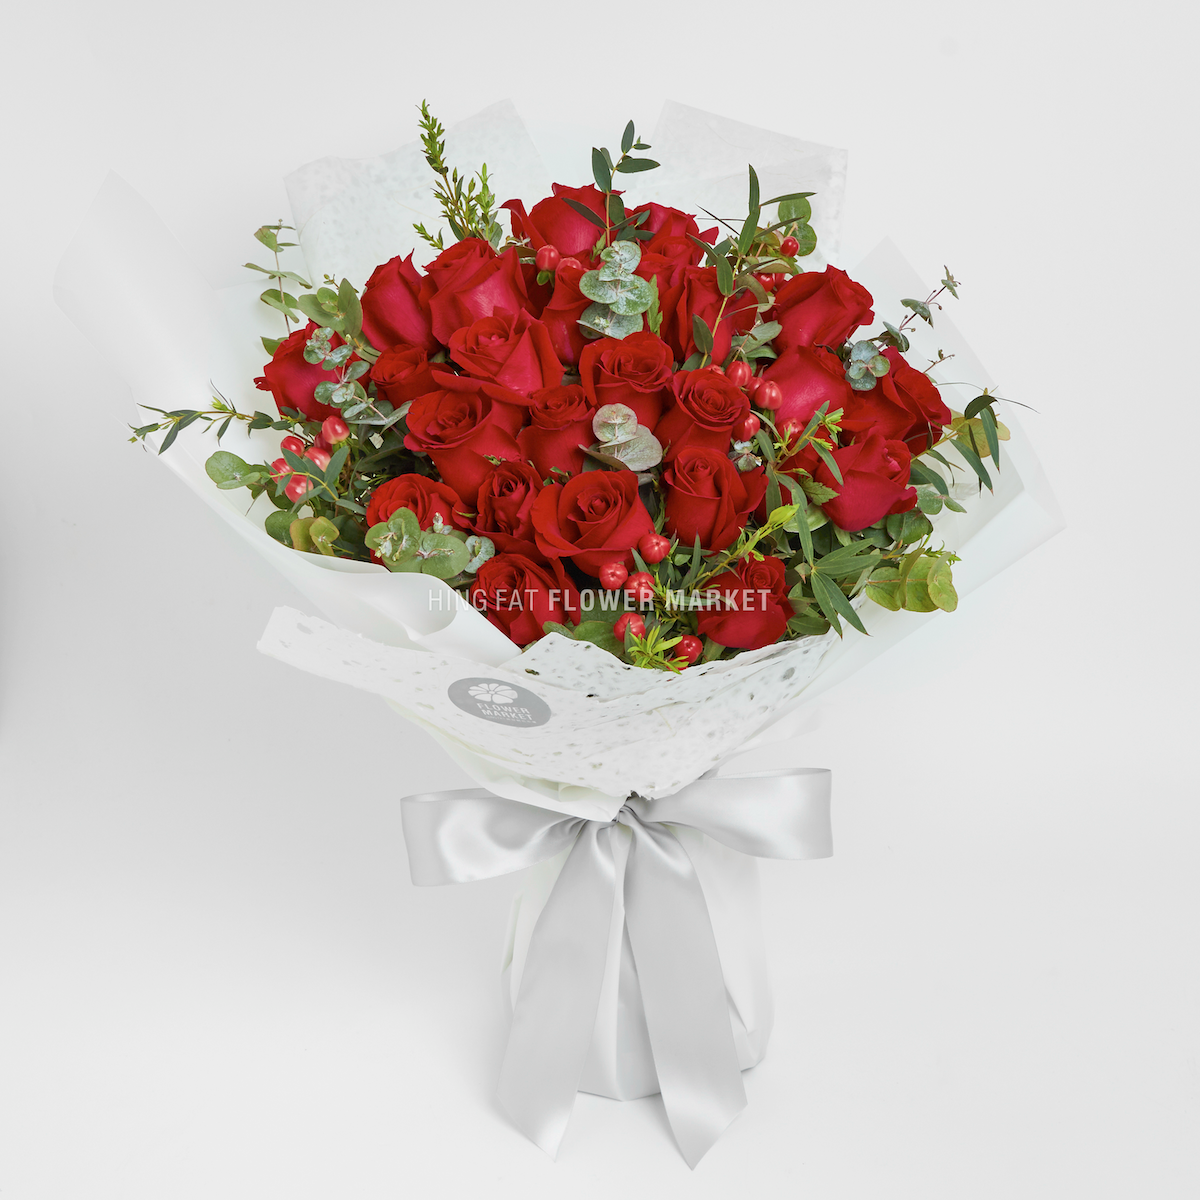 紅玫瑰紅豆花束 Red rose and hypericum bouquet